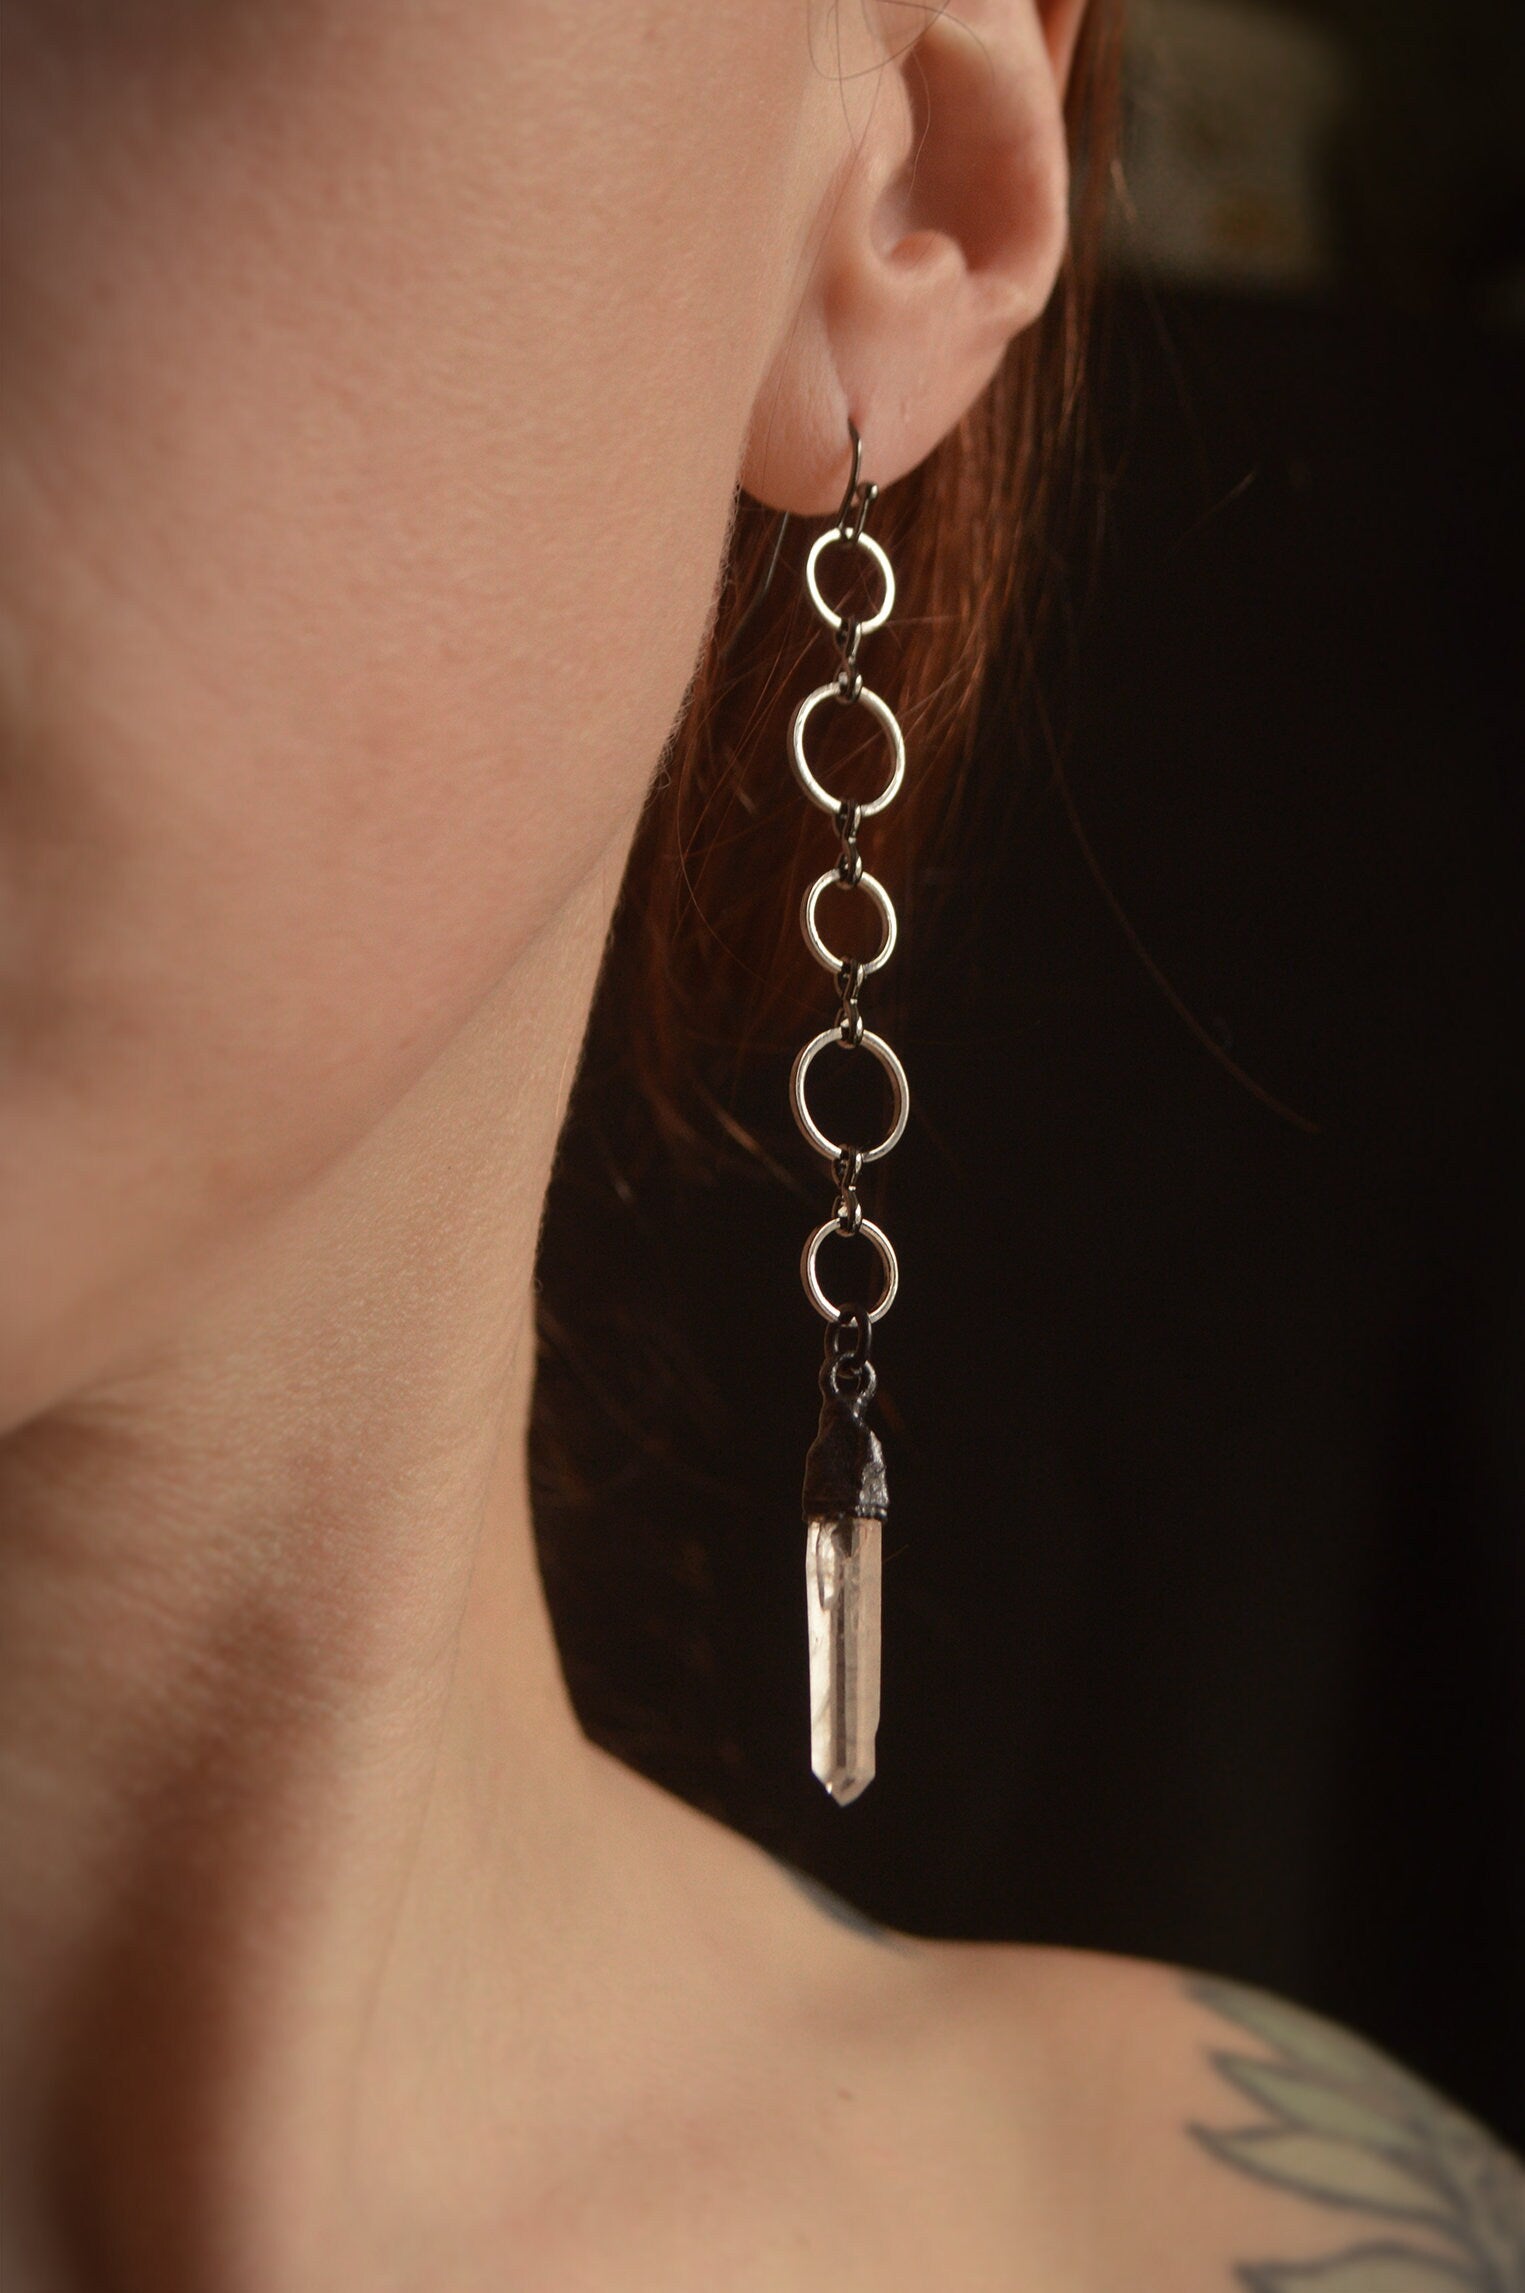 Dangling earrings with quartz points. Extra long earrings. Gunmetal black jewellery